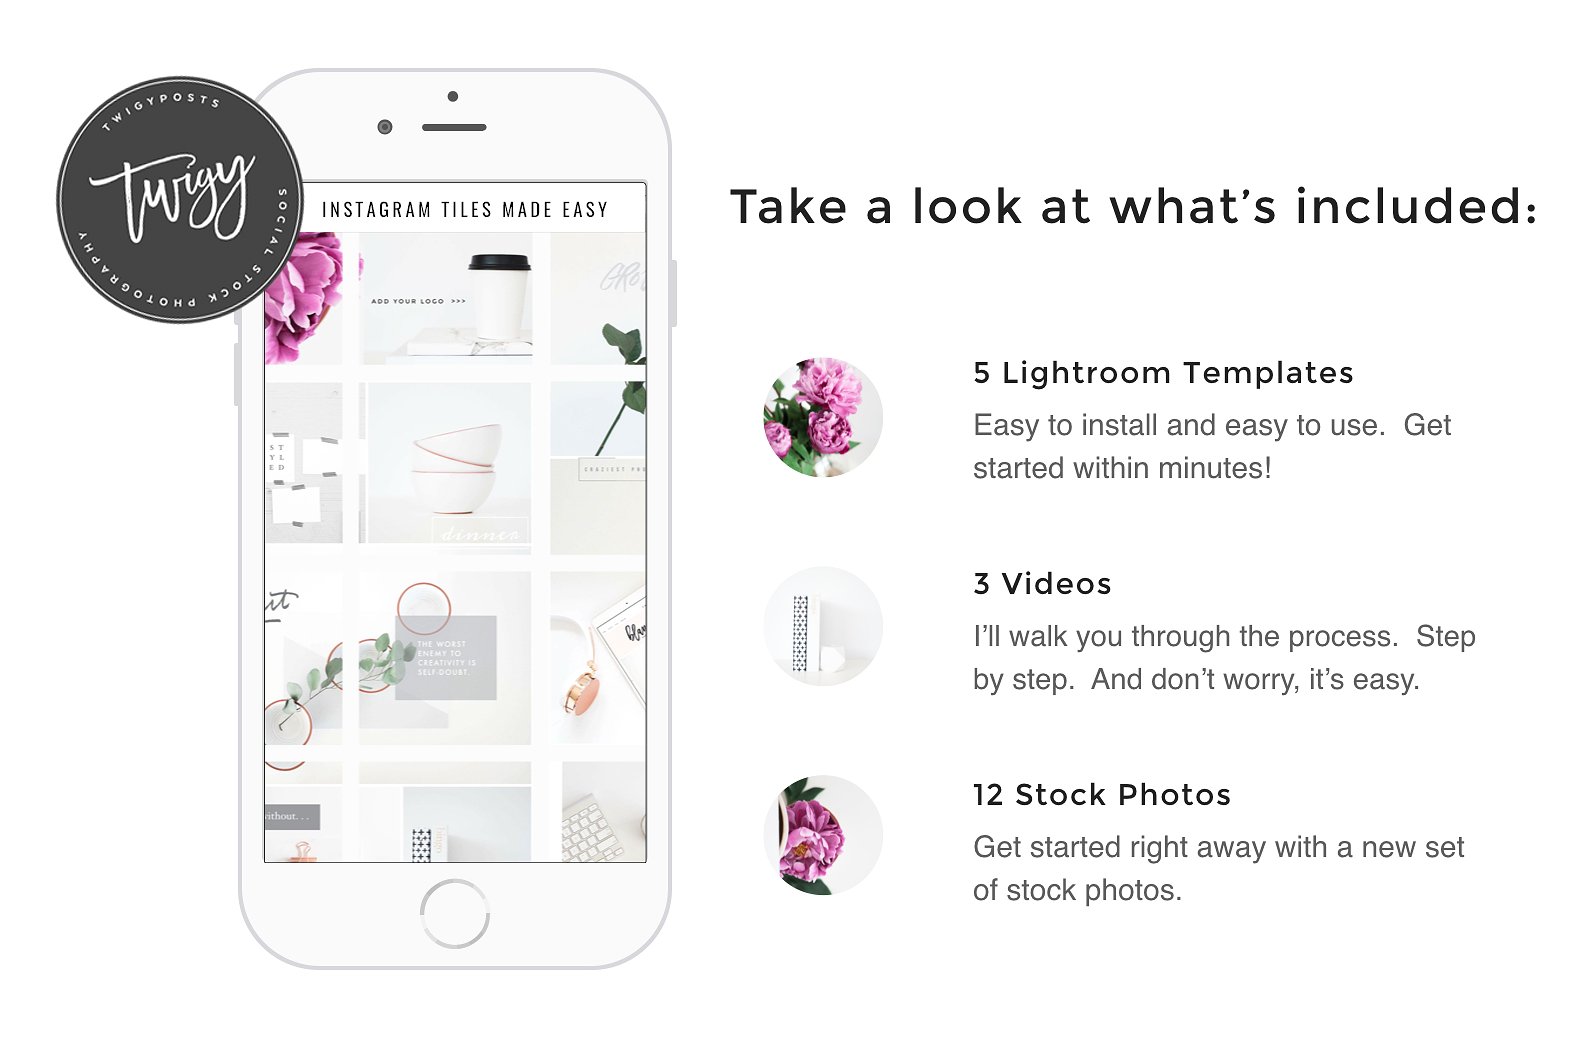 产品包装效果图照片展示 Create Instagram Tiles插图